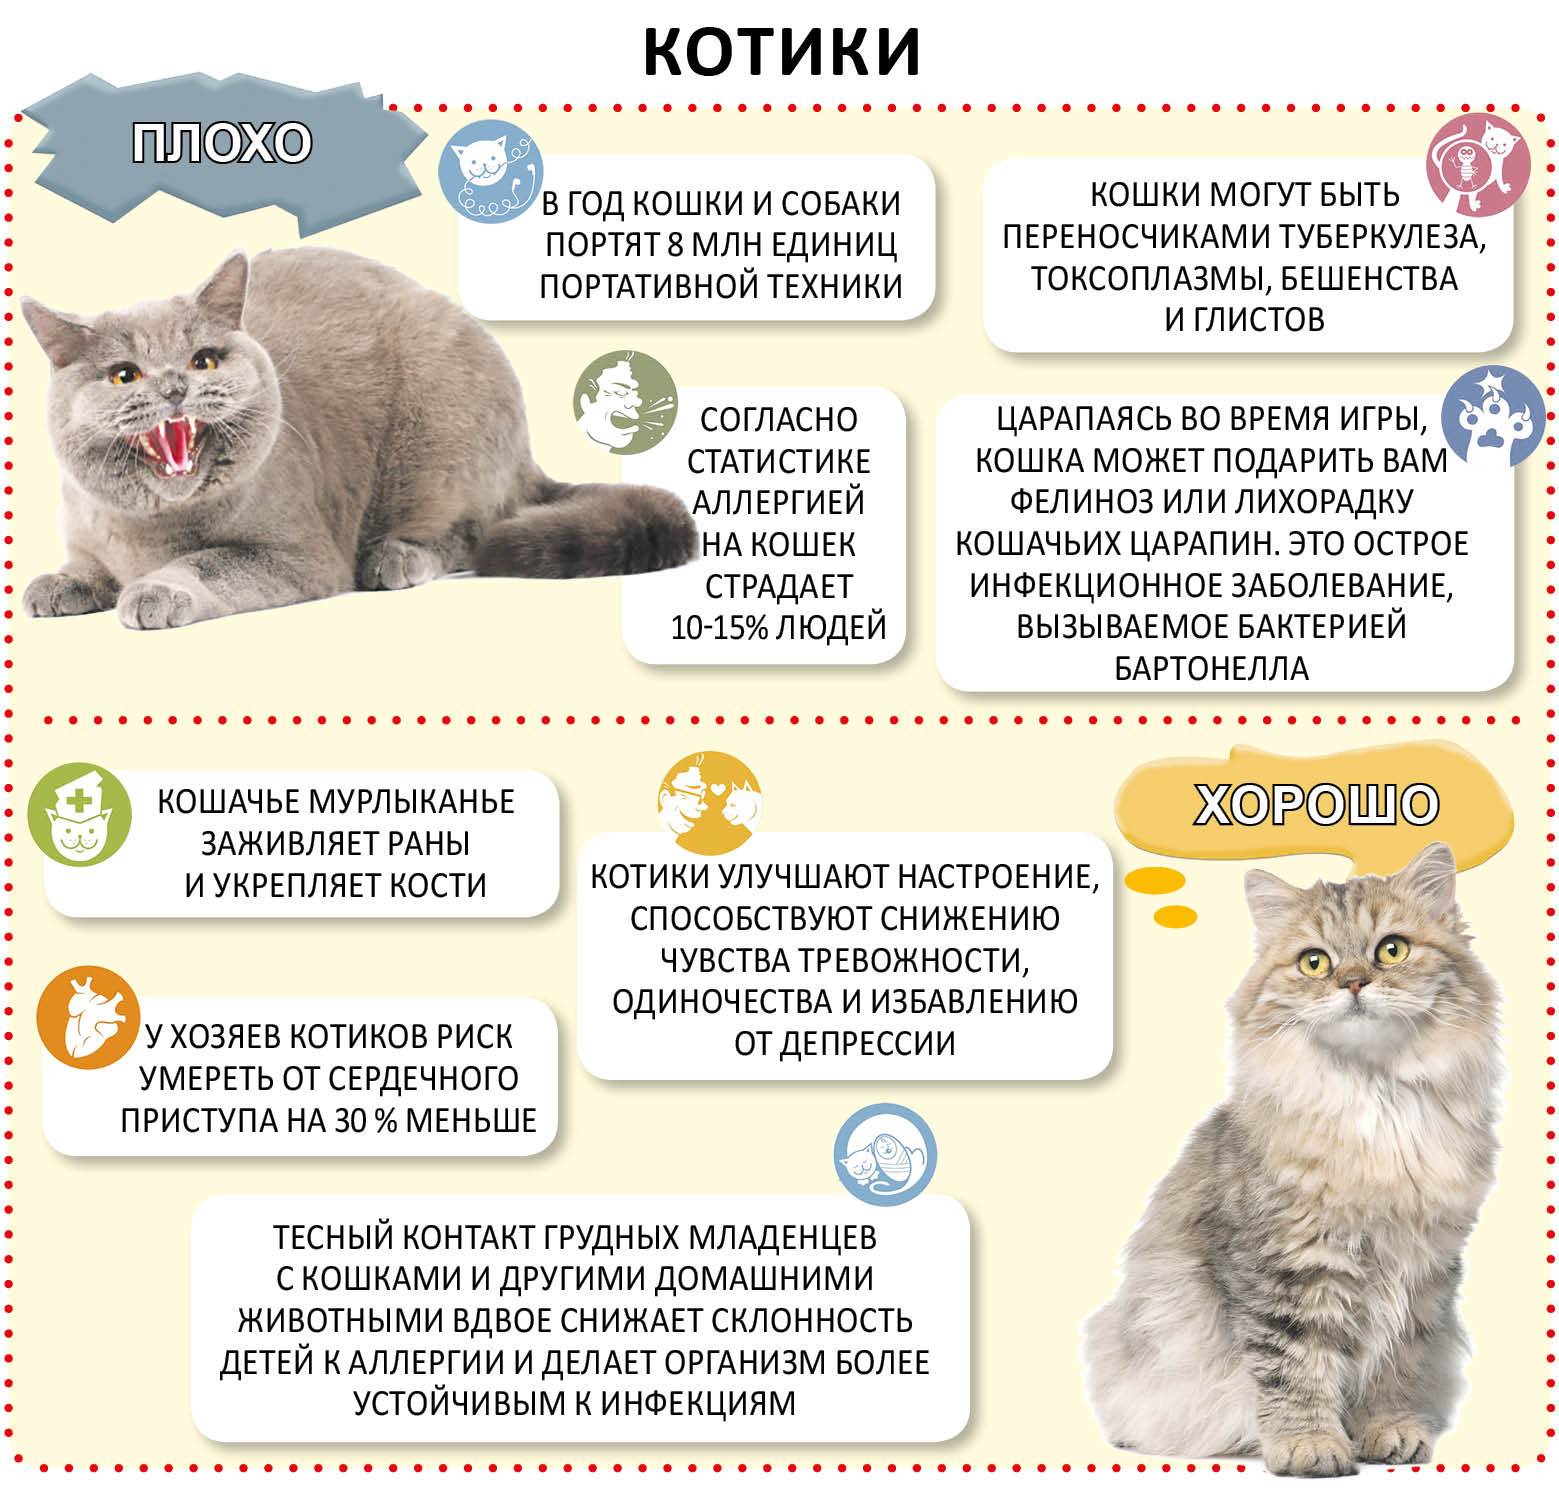 Как понять, что у кошки течка: симптомы и признаки